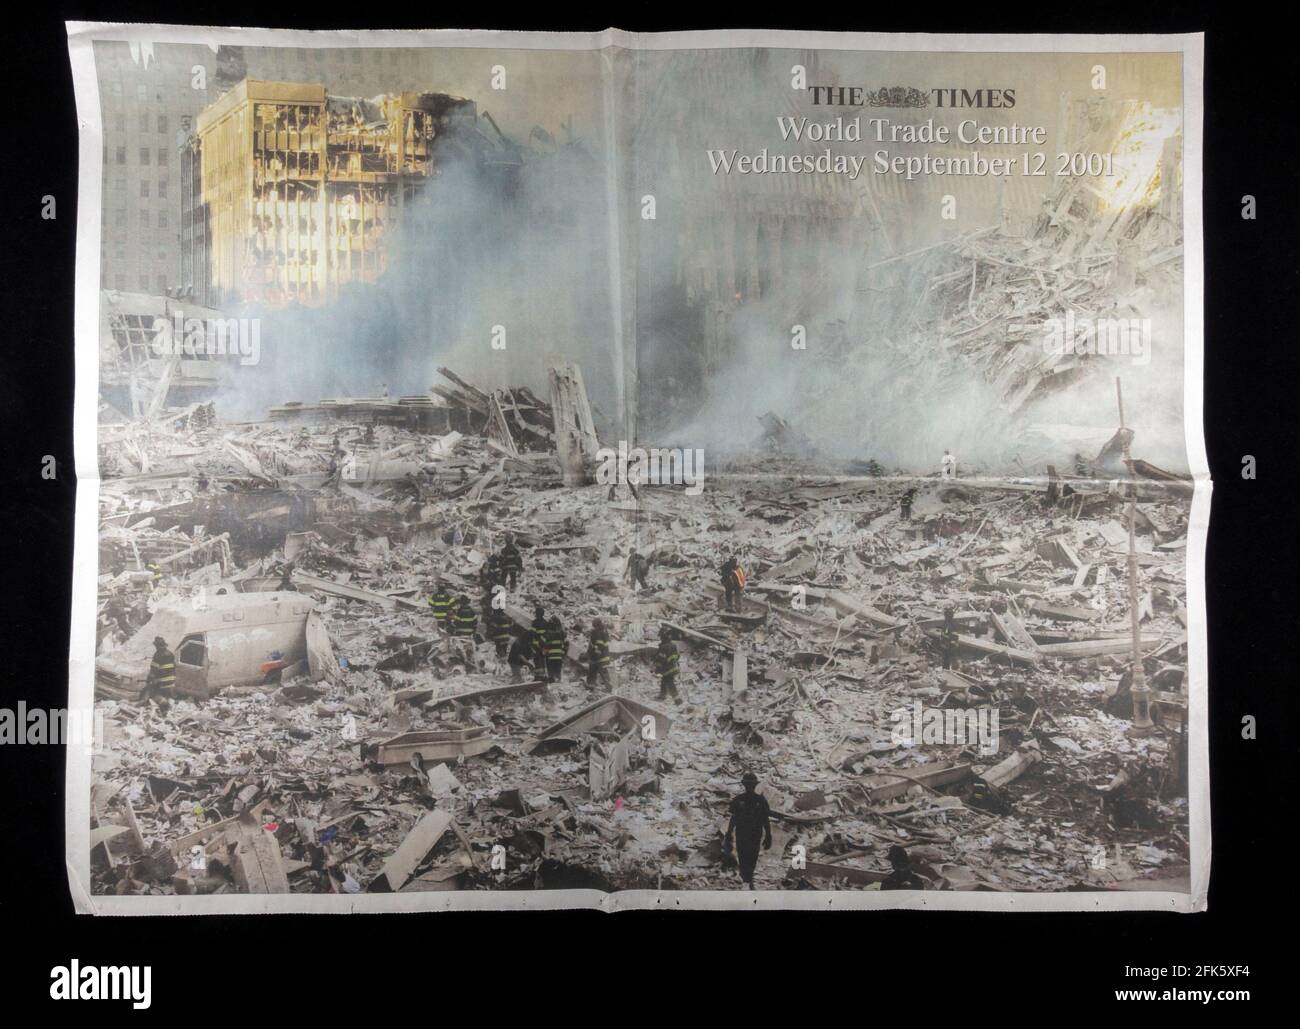 Immagine in doppia pagina del World Trade Center in seguito agli attacchi terroristici contro gli Stati Uniti dell'11 settembre 2001 a The Times (Regno Unito). Foto Stock